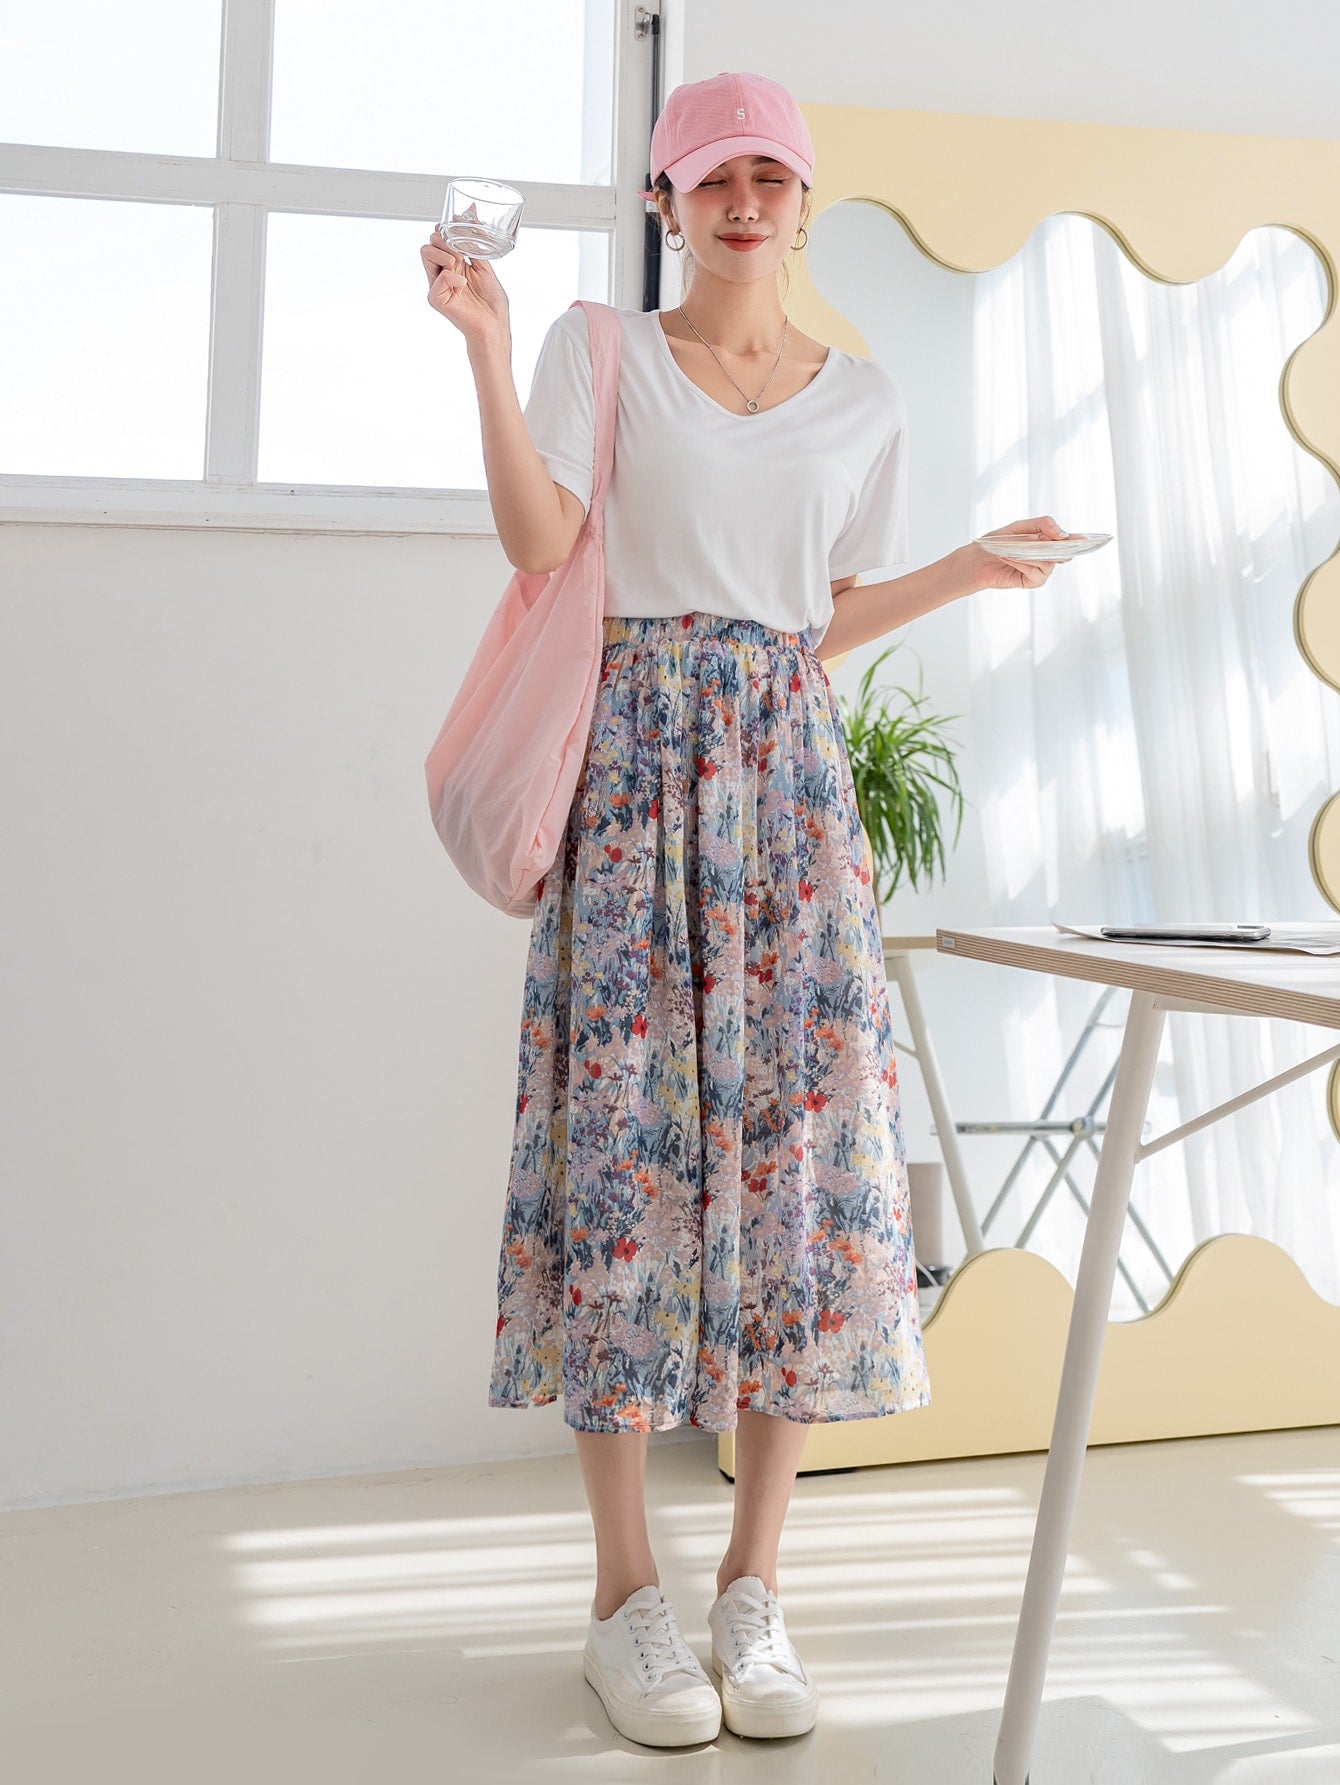 High Waist Floral Print Skirt